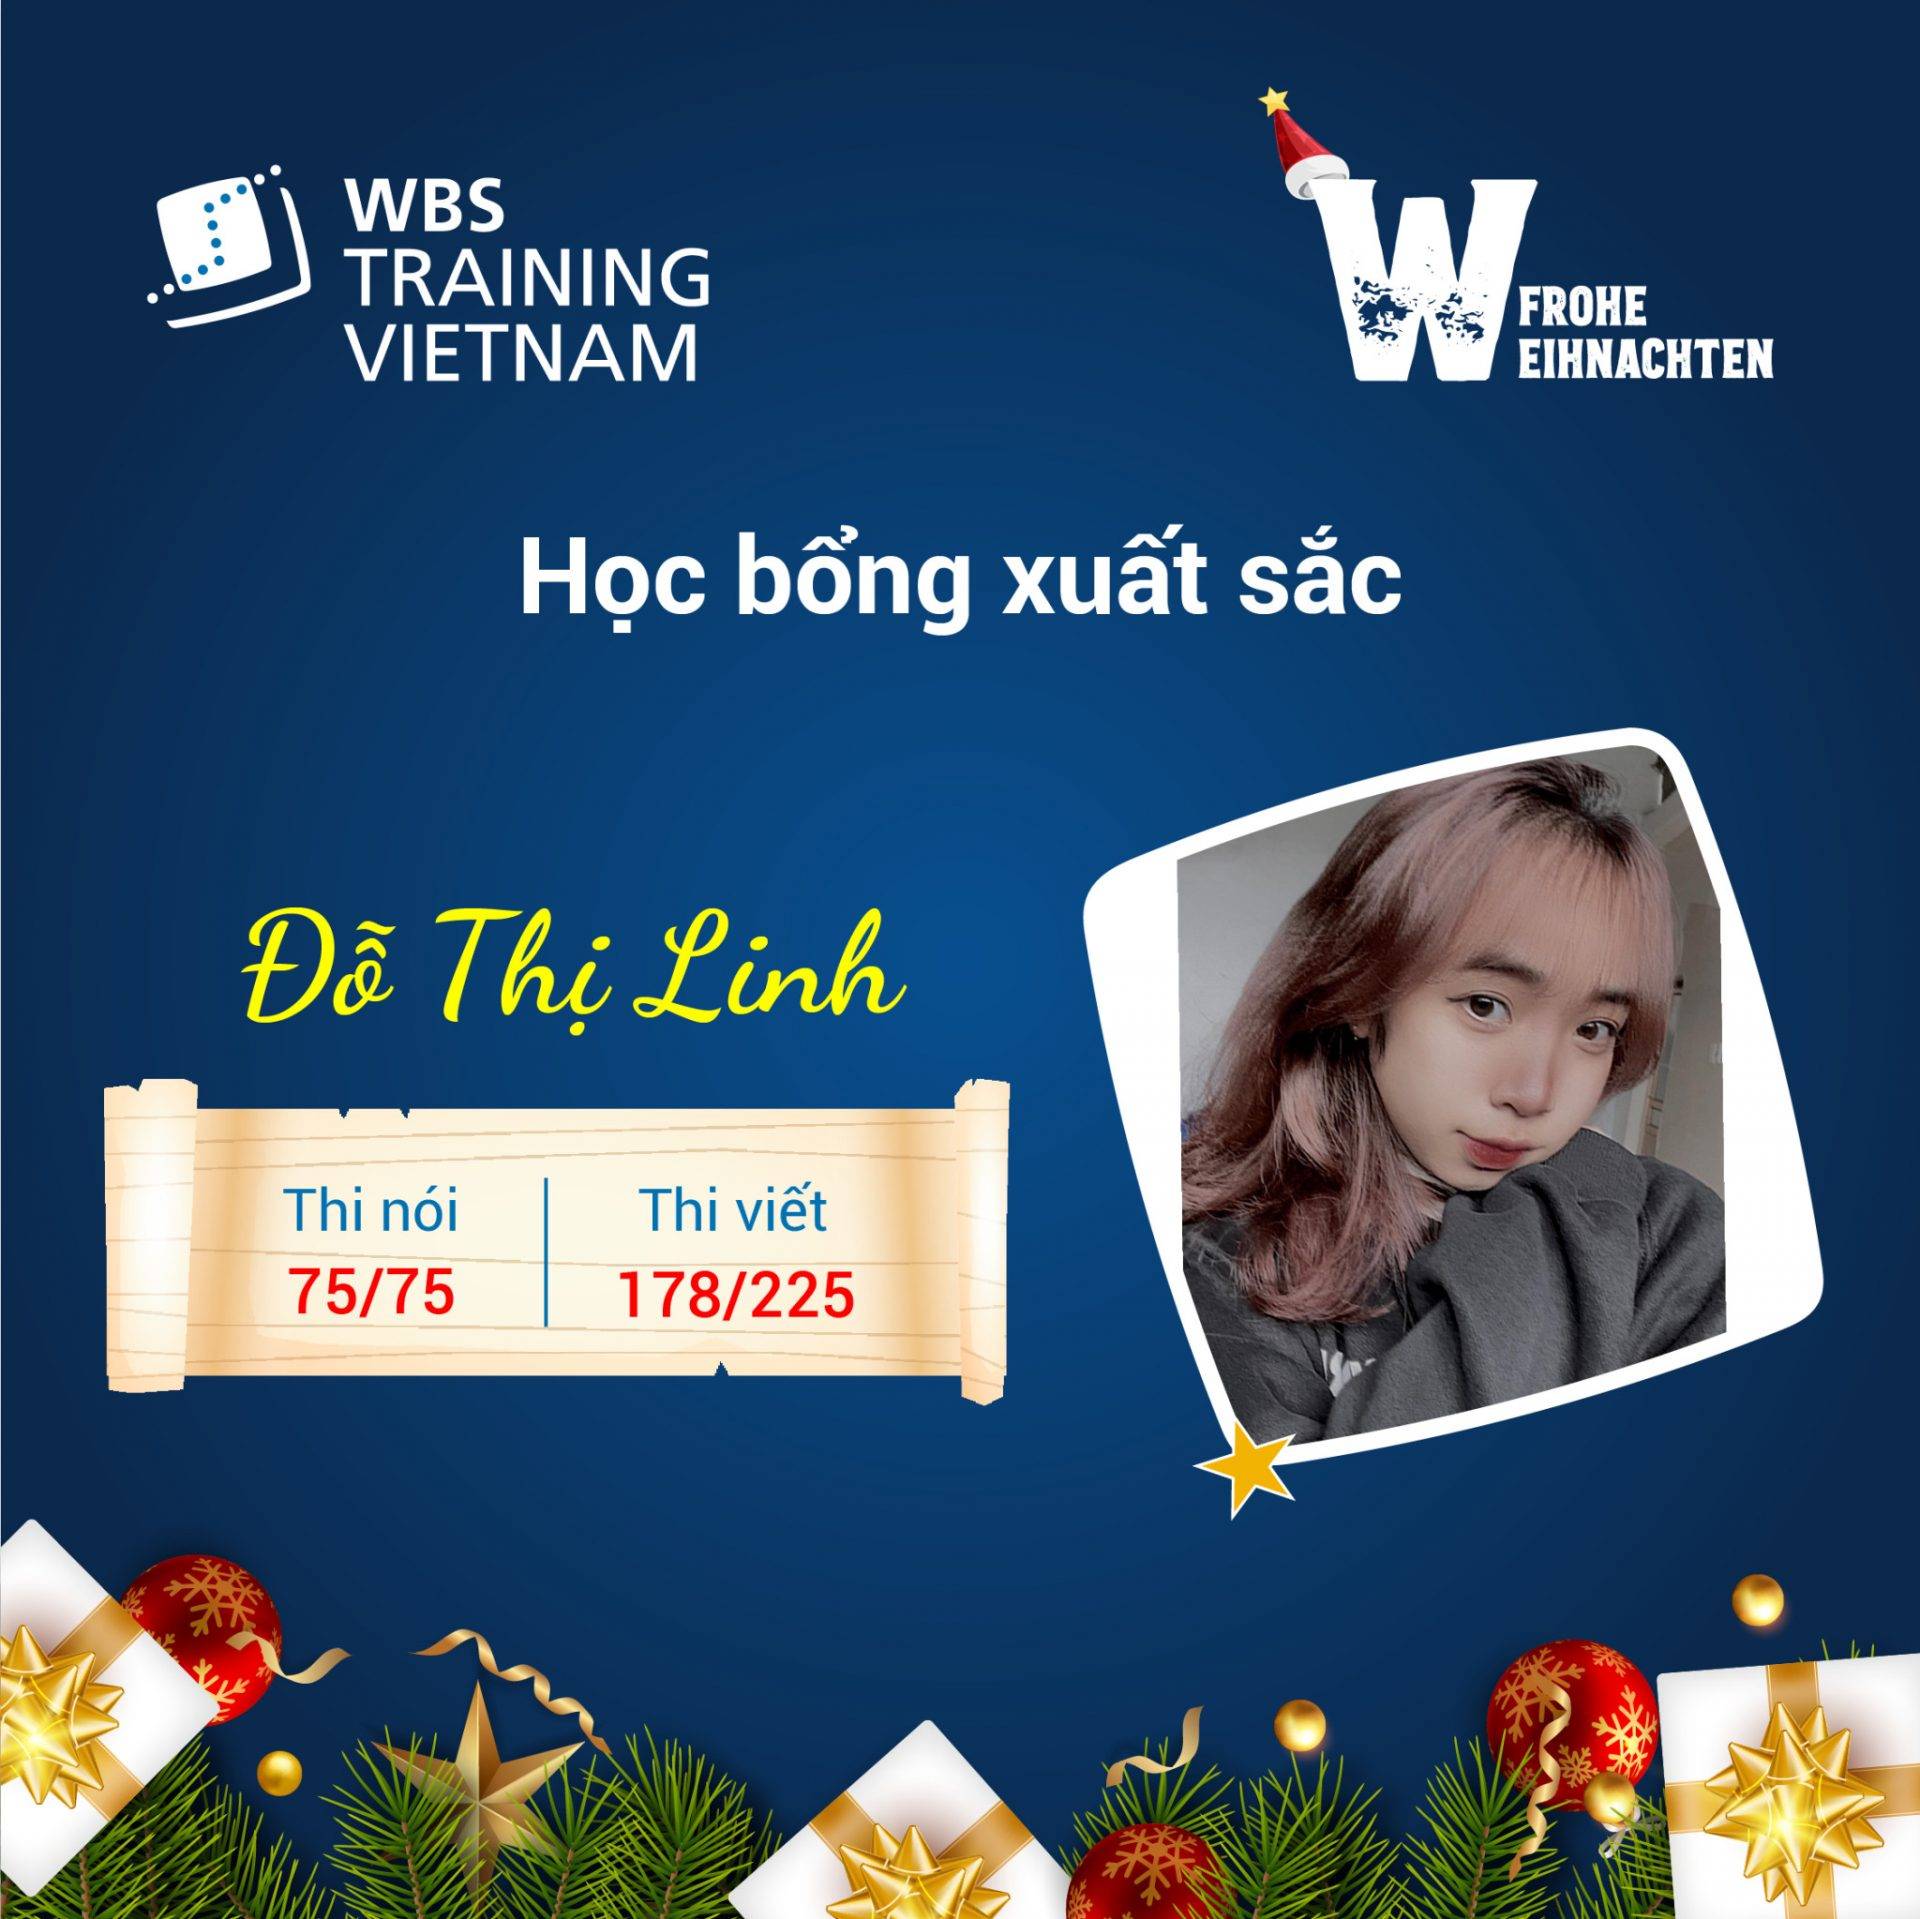 Đỗ Thị Linh - Học viên ưu tú tại WBS Training Vietnam